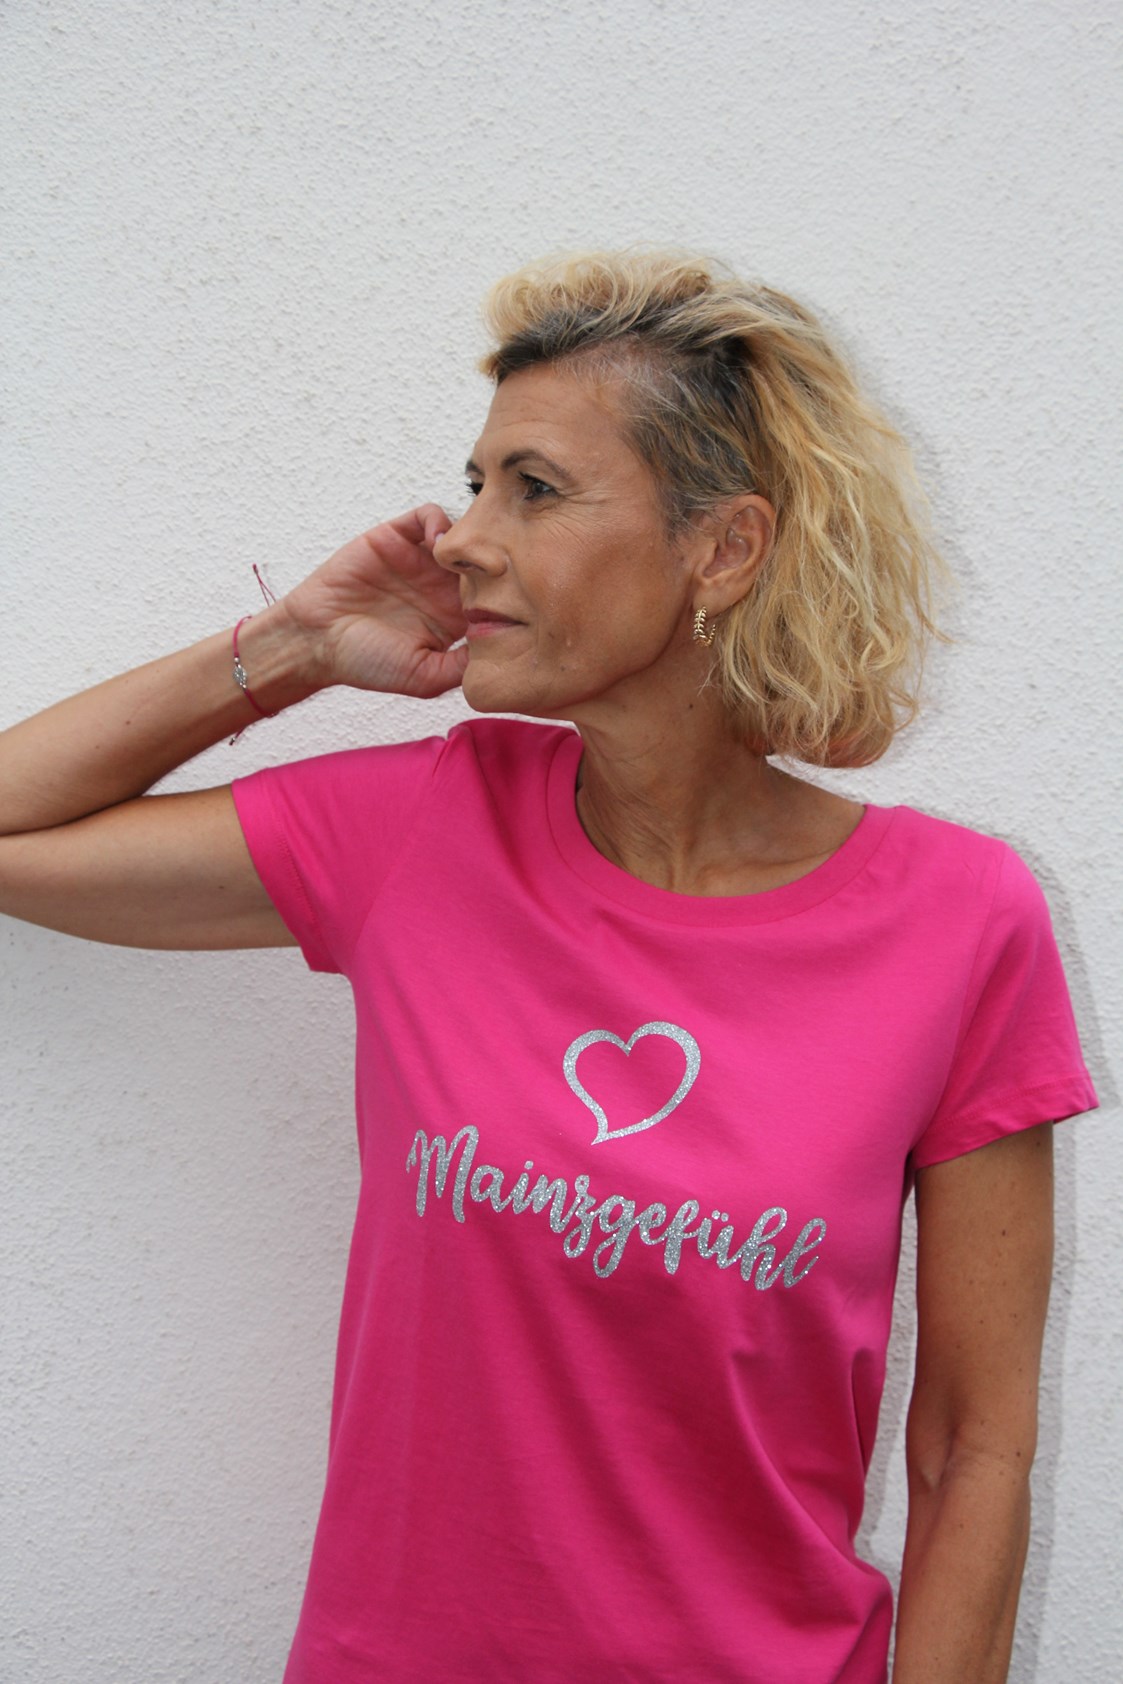 Einkaufen Mainz: Unsere exklusiven Mainzgefühl Shirts aus unserer Kollektion gibt es in verschiedenen Farben und Größen, hergestellt aus BioBaumwolle und fair produziert. - Marla Mode und Manufaktur